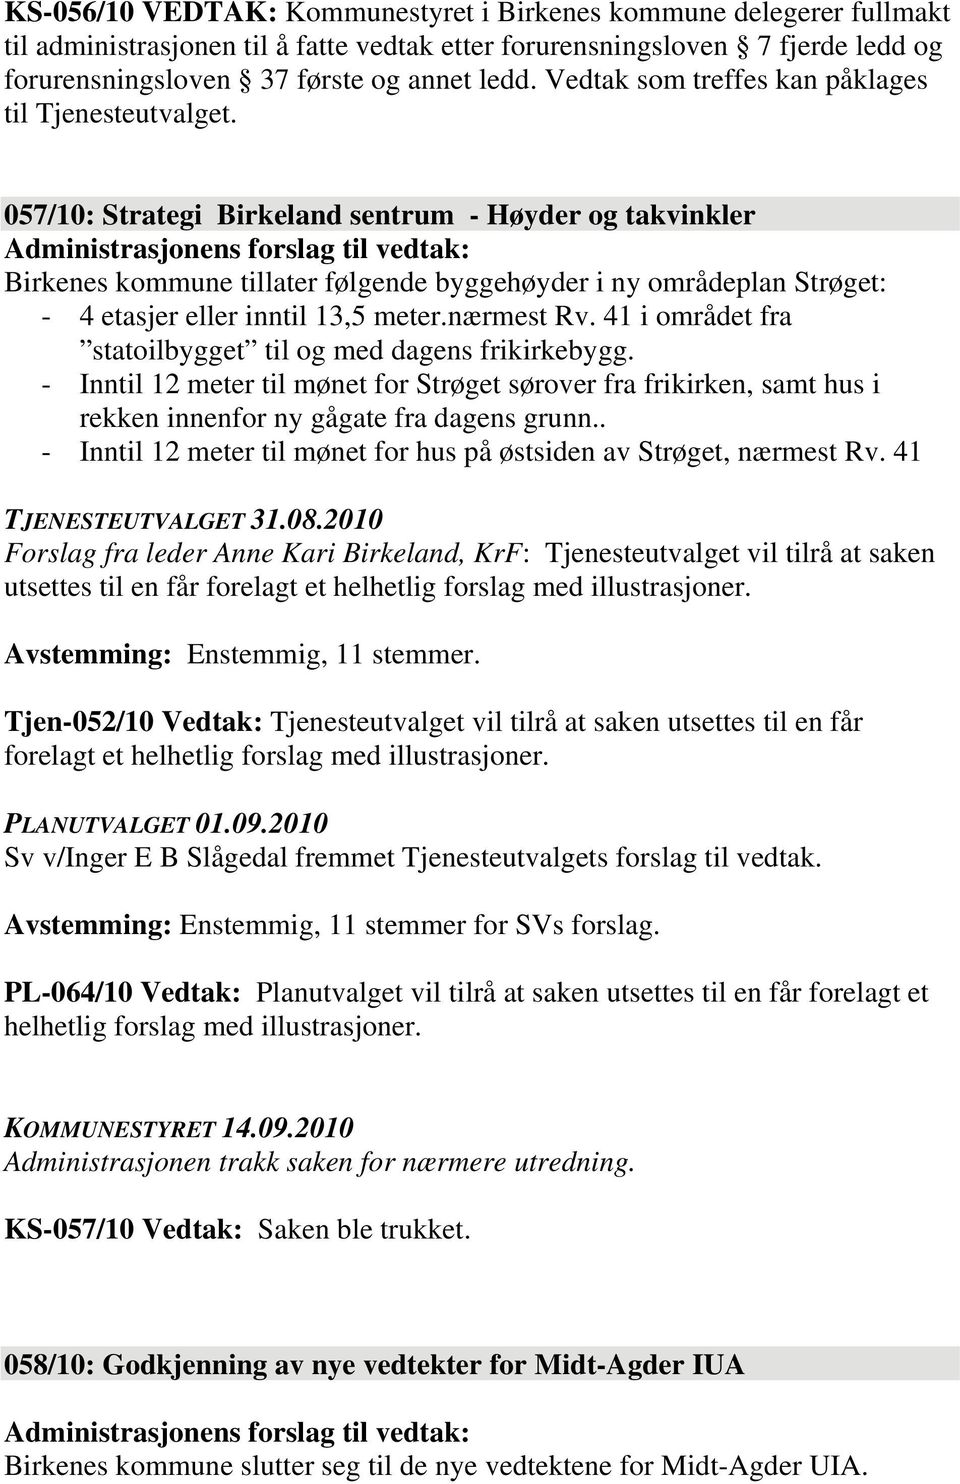 057/10: Strategi Birkeland sentrum - Høyder og takvinkler Birkenes kommune tillater følgende byggehøyder i ny områdeplan Strøget: - 4 etasjer eller inntil 13,5 meter.nærmest Rv.